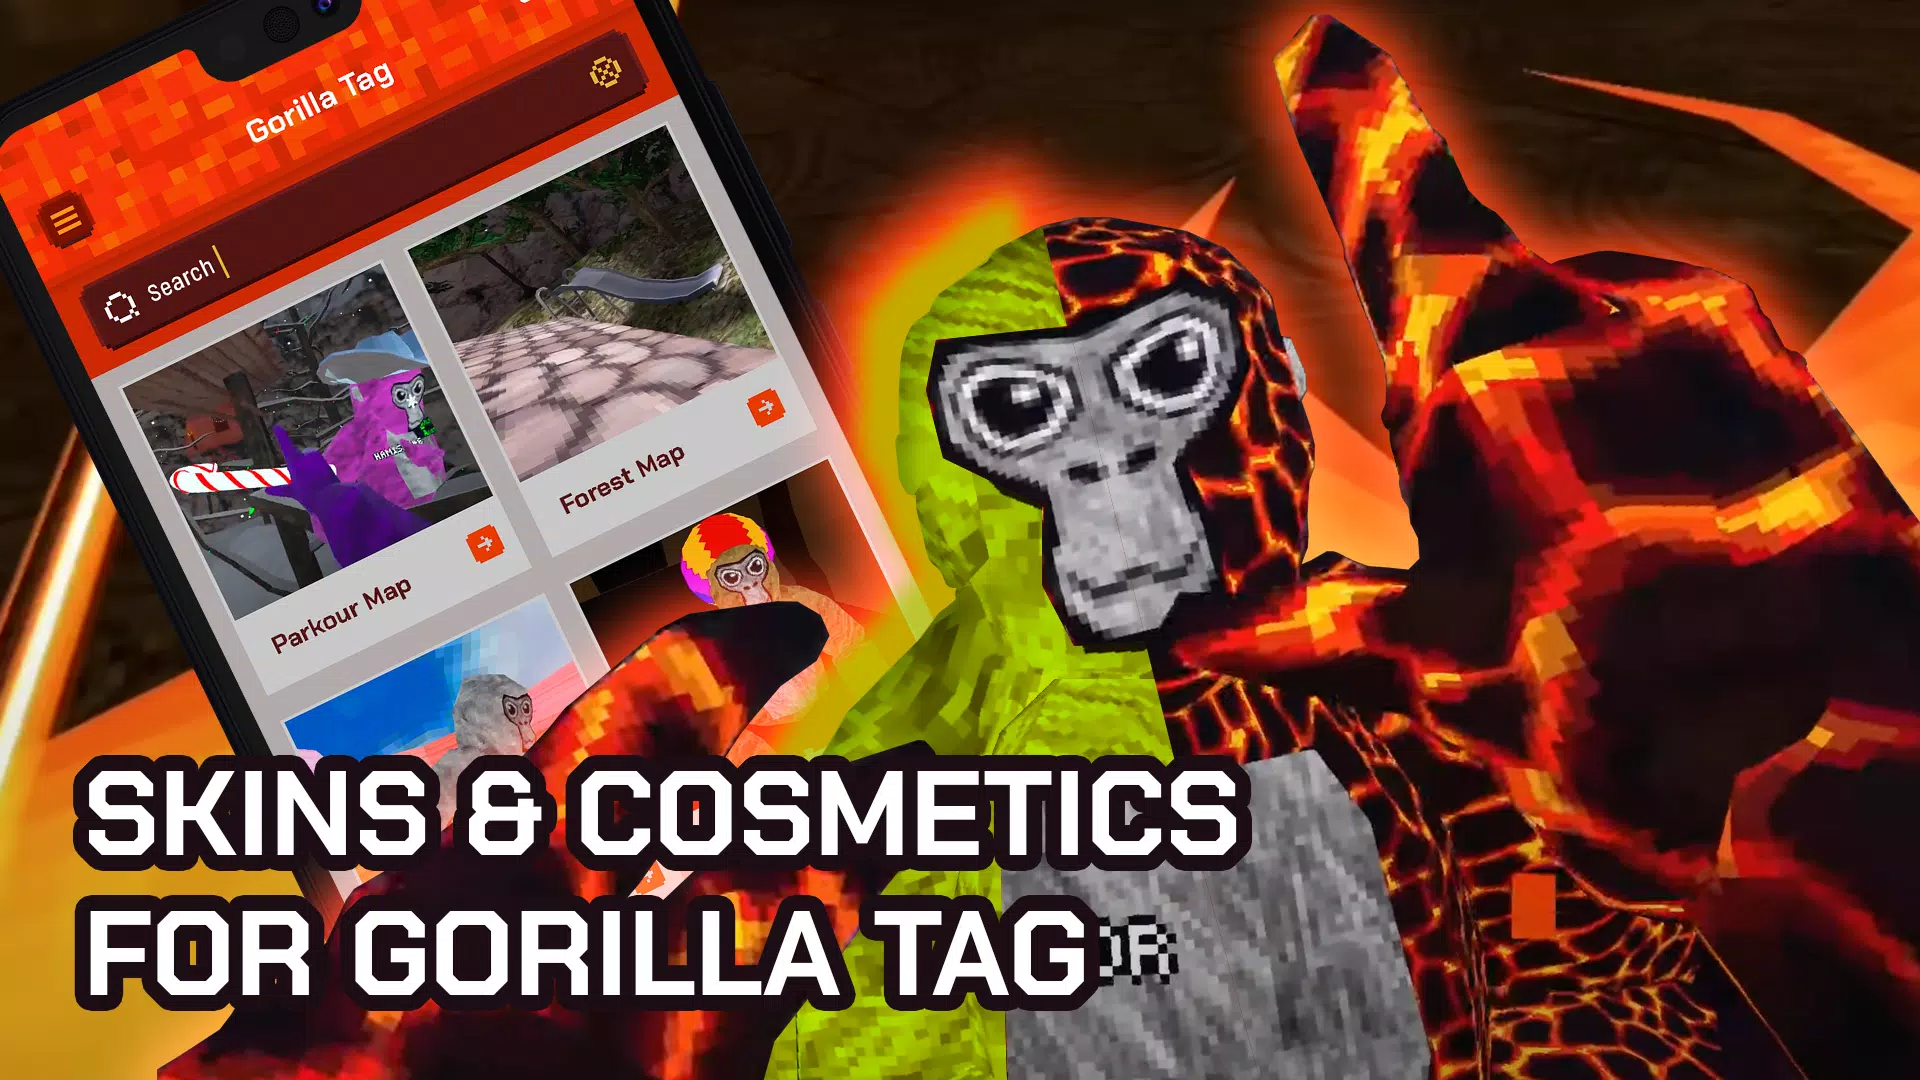 How to make a APK gorilla tag! 